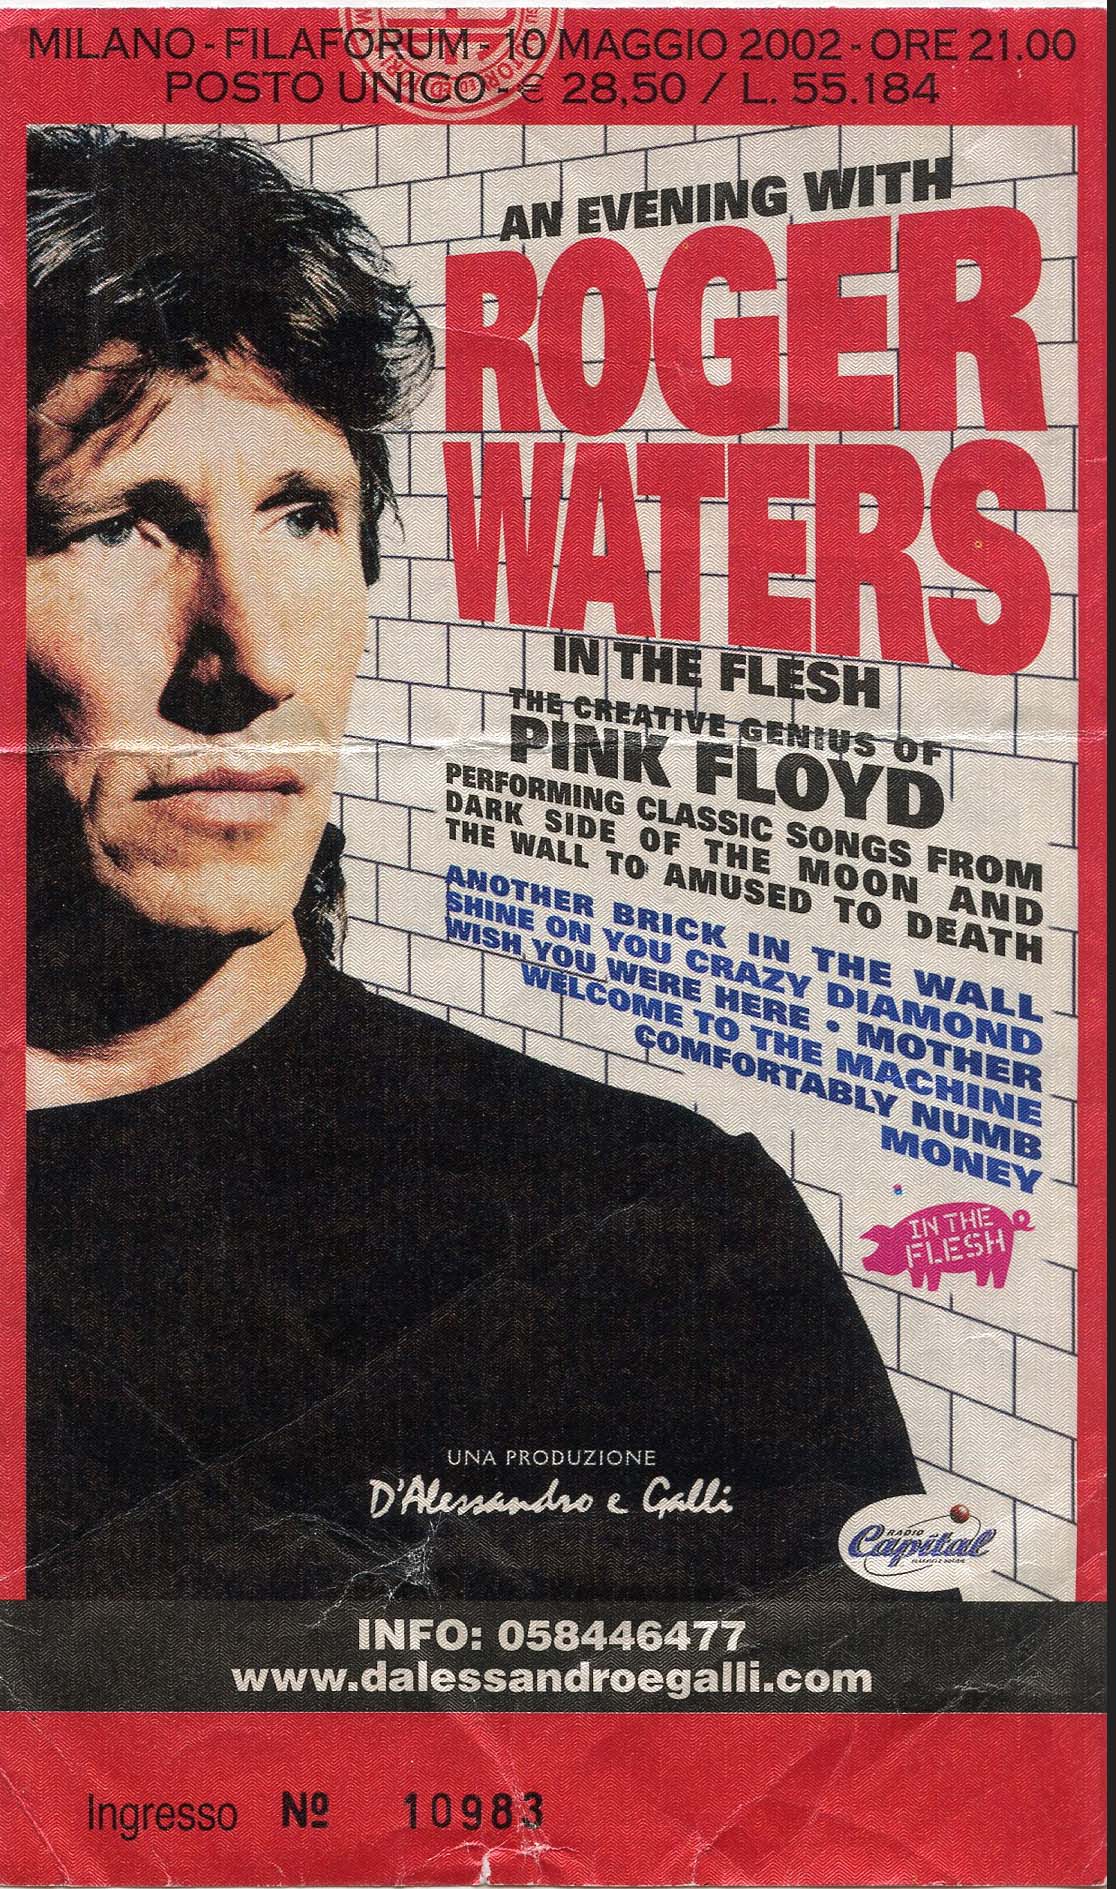 Roger Waters 10.05.2002,  Assago (Mi), Filaforum